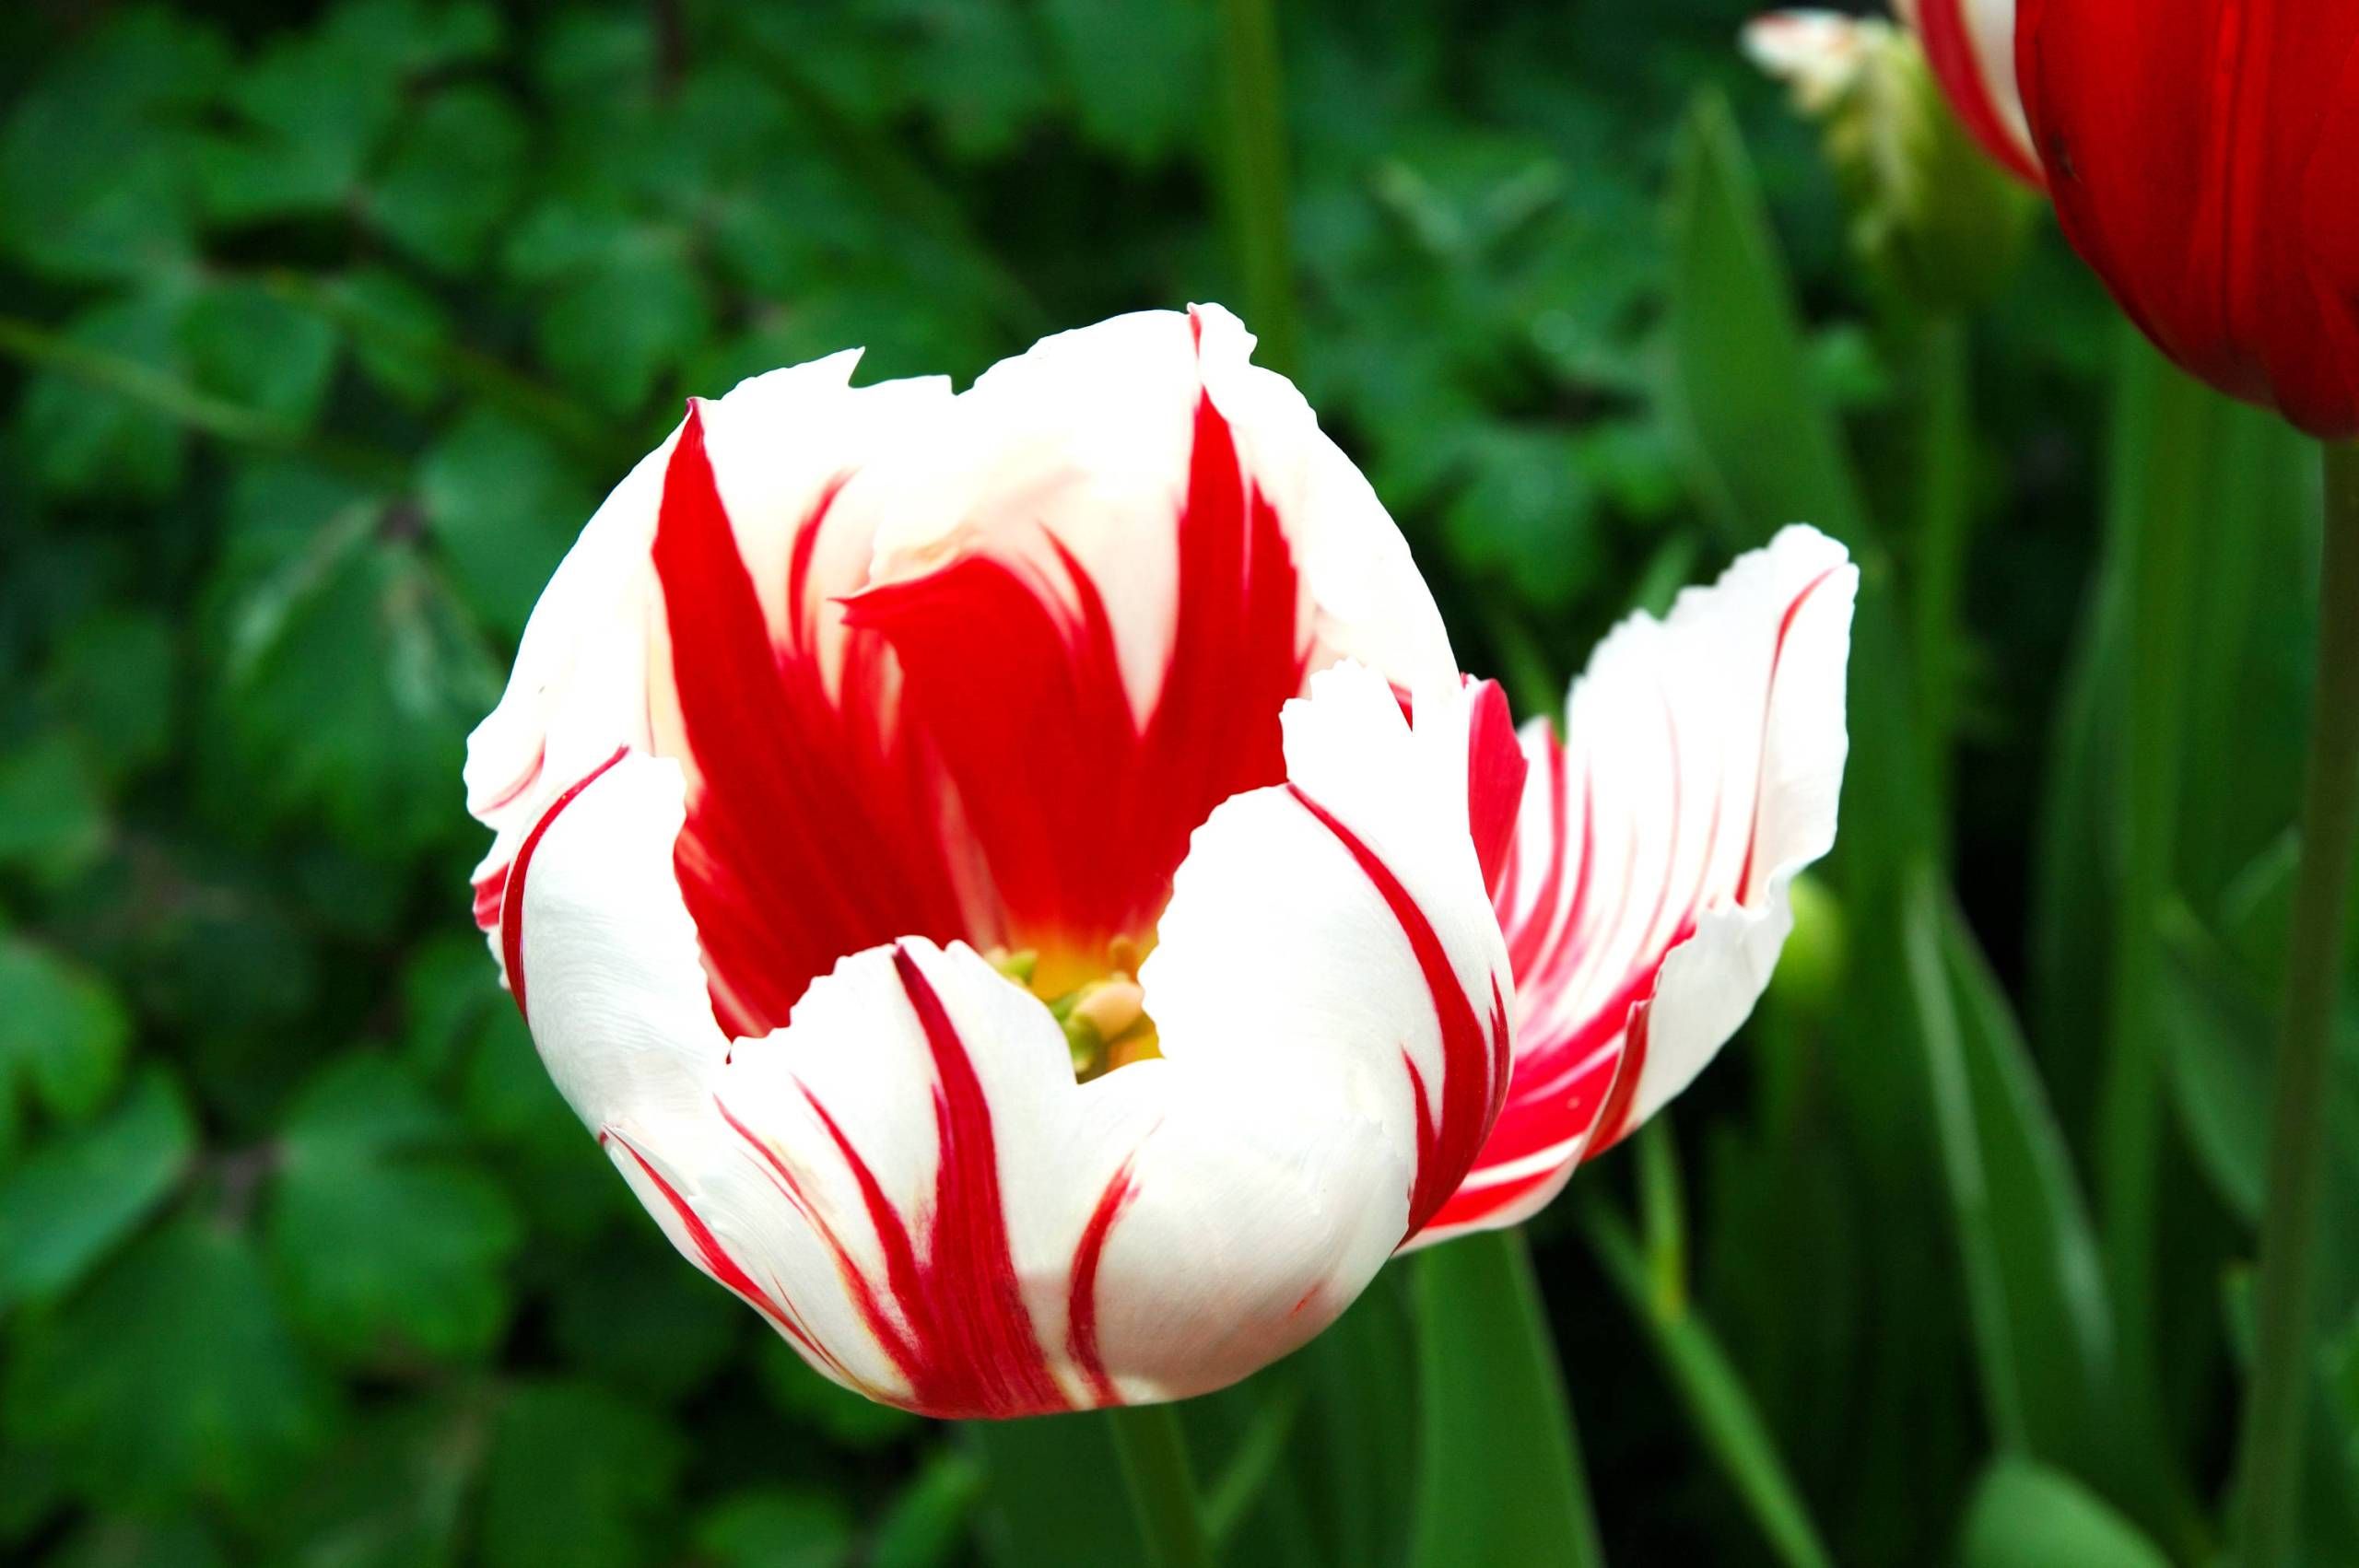 Red and White Tulips Wallpaper8 | Flower | Pinterest | Wallpaper